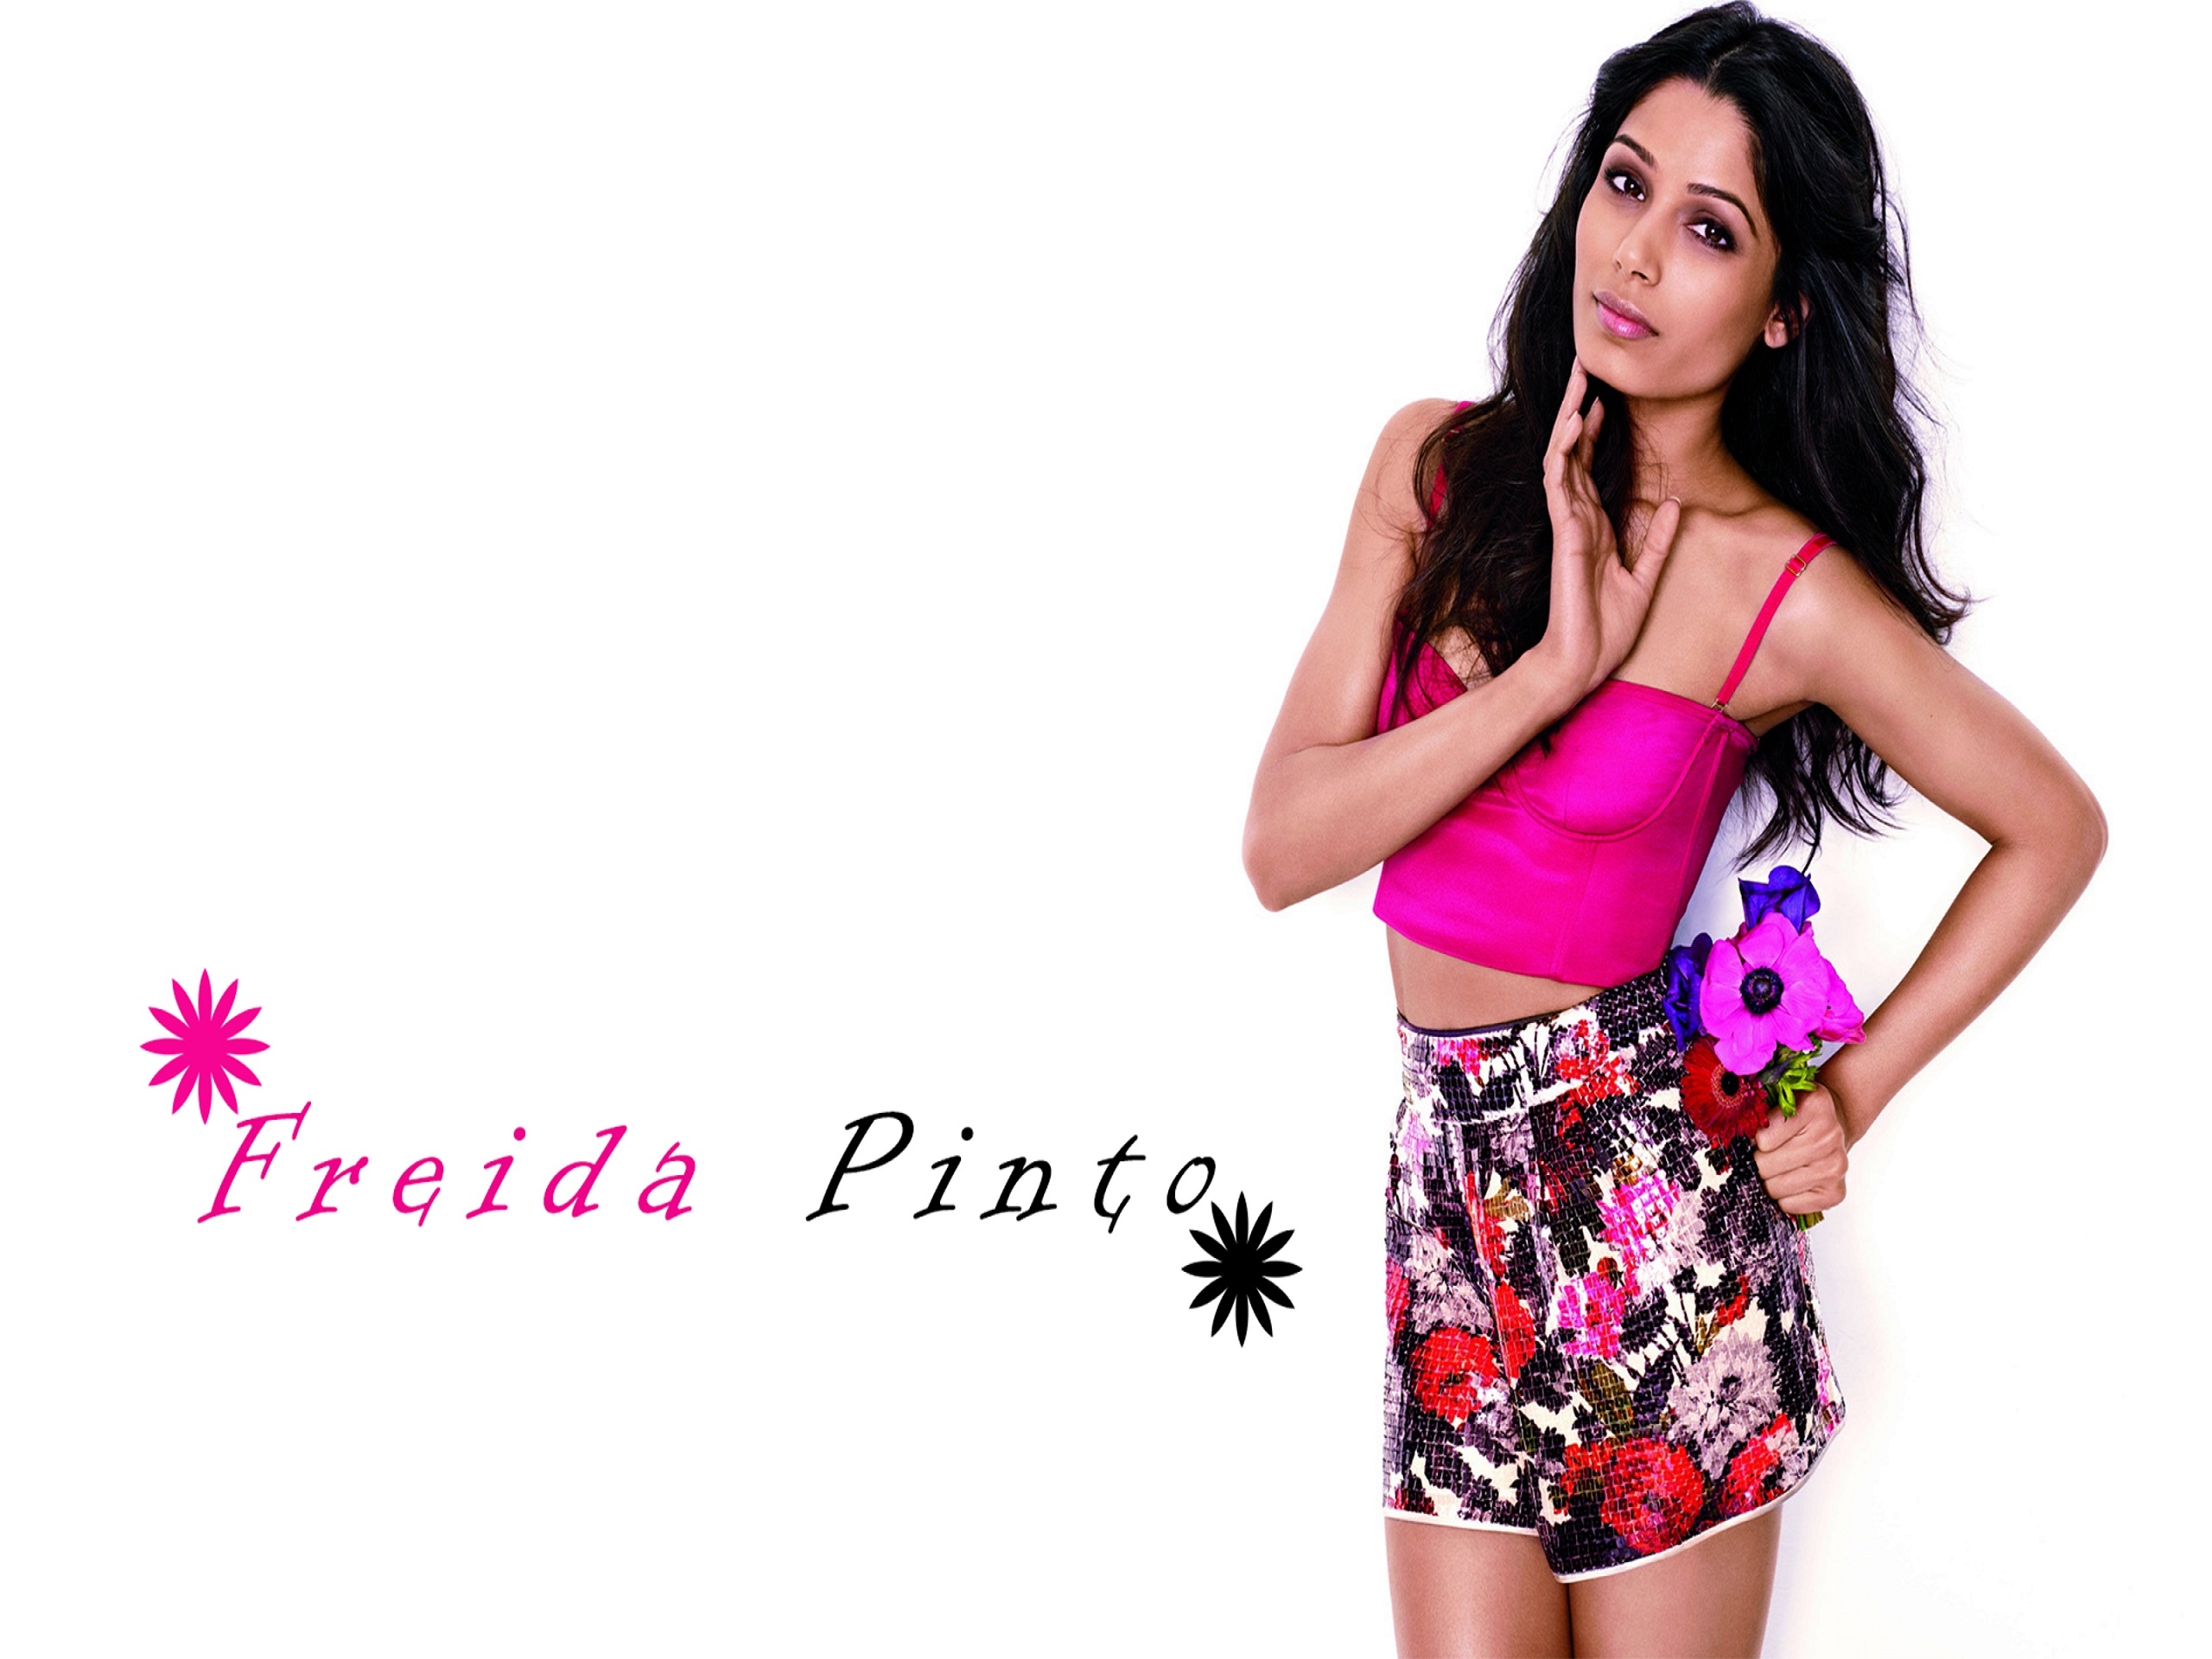 Glamorous Freida Pinto for 2560 x 1920 resolution